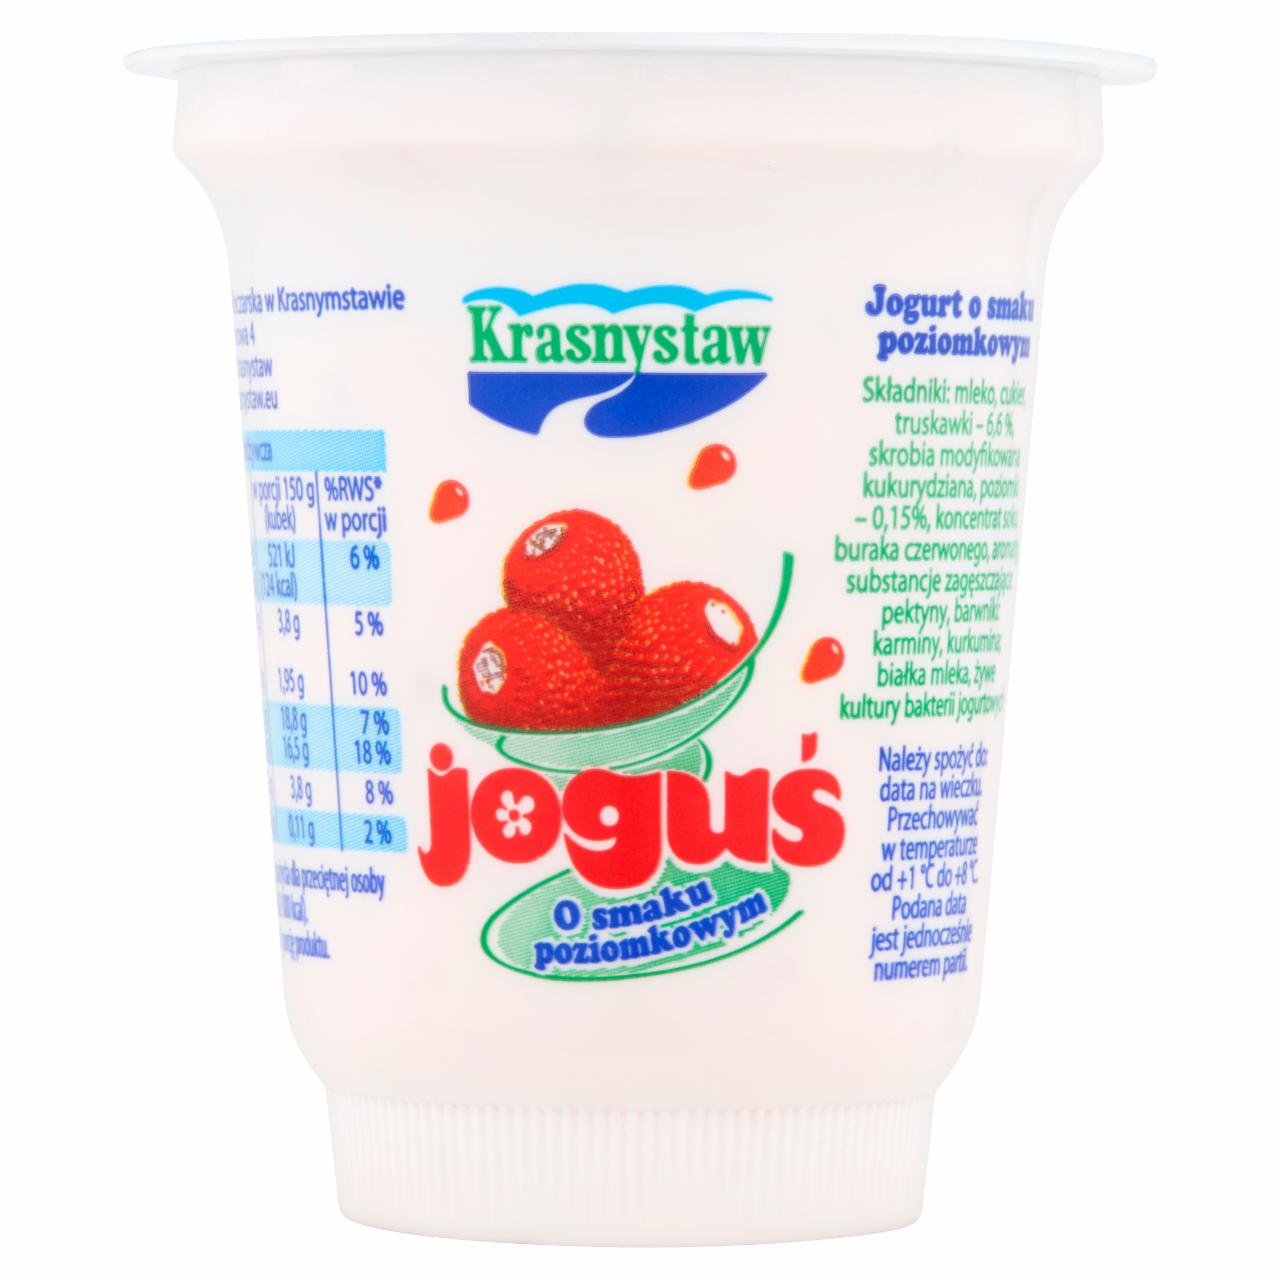 Zdjęcia - Krasnystaw Joguś Jogurt o smaku poziomkowym 150 g